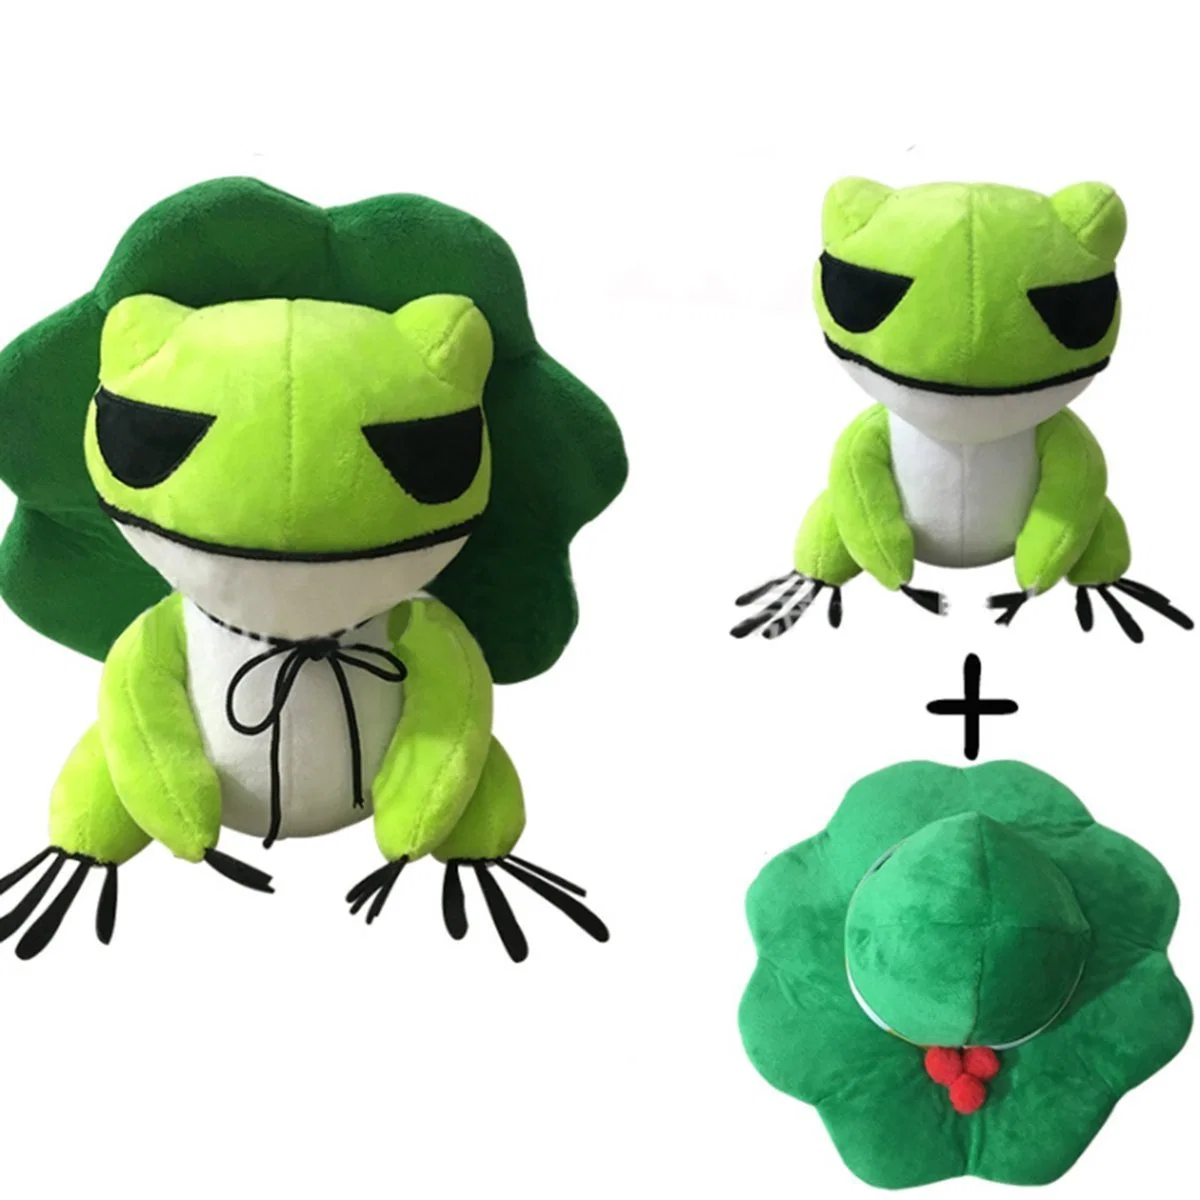 Kawaii poupée en peluche jouets voyager deux dimensions de la grenouille Cure jeter l'oreiller avec poignée amovible Soft Stuff jouets Hat pour Adultes Enfants